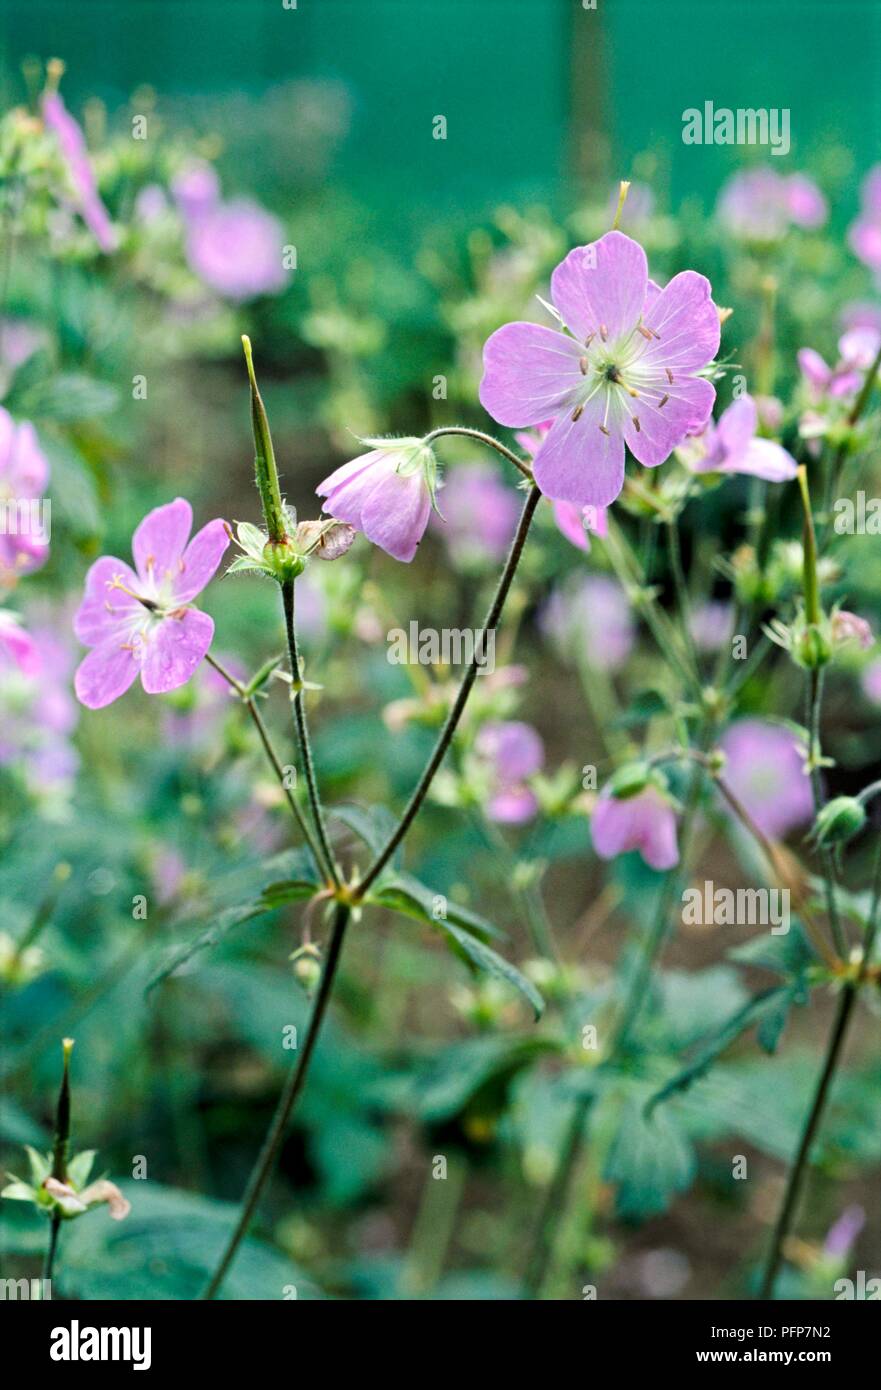 Geranium maculatum 'Espresso' (Wood geranium, Wild geranium), close-up on purple flowers Stock Photo